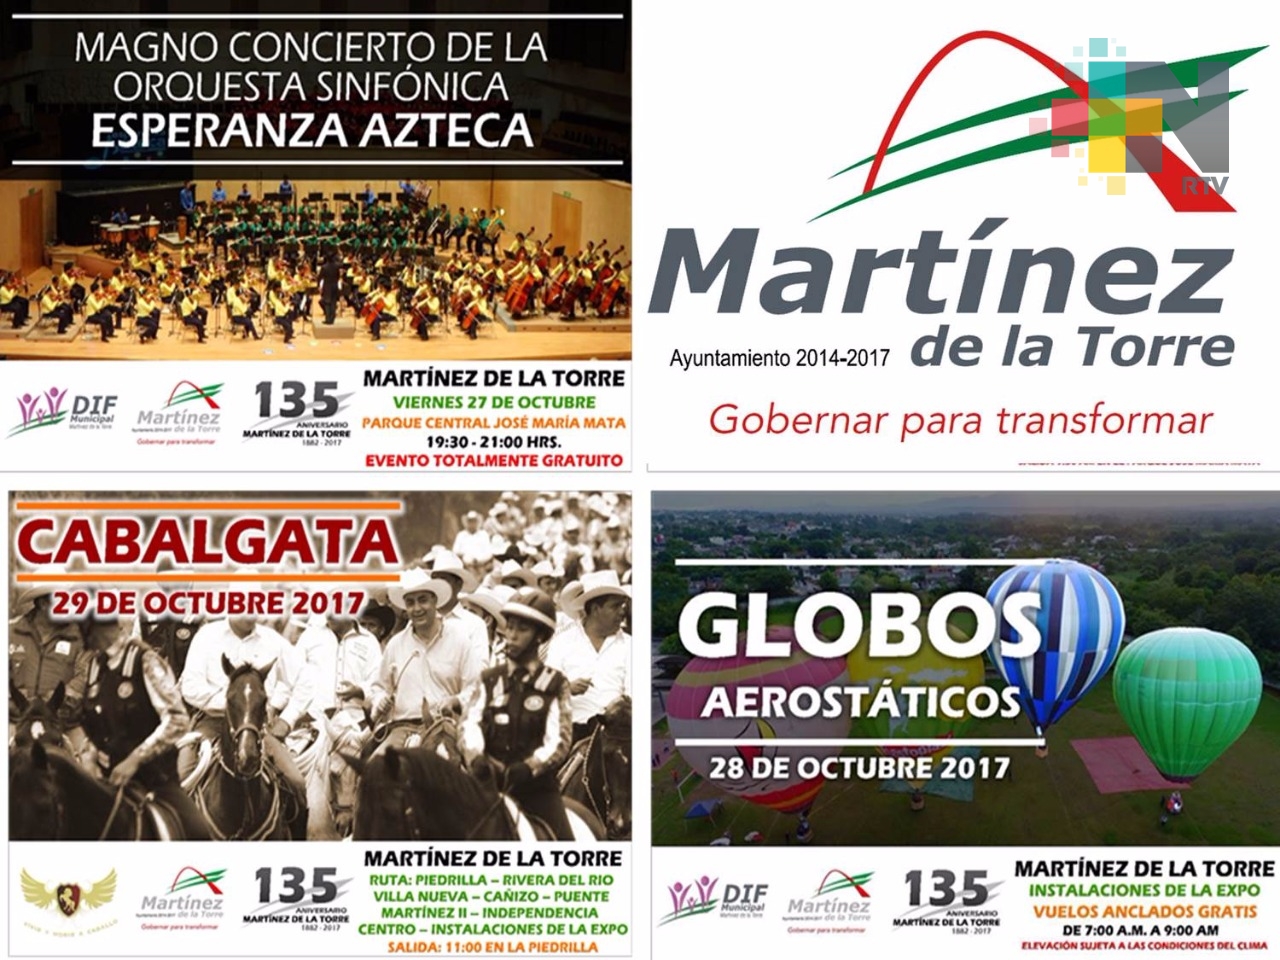 Invitan a la tarde cultural con motivo del 135 aniversario de la fundación de Martínez de la Torre